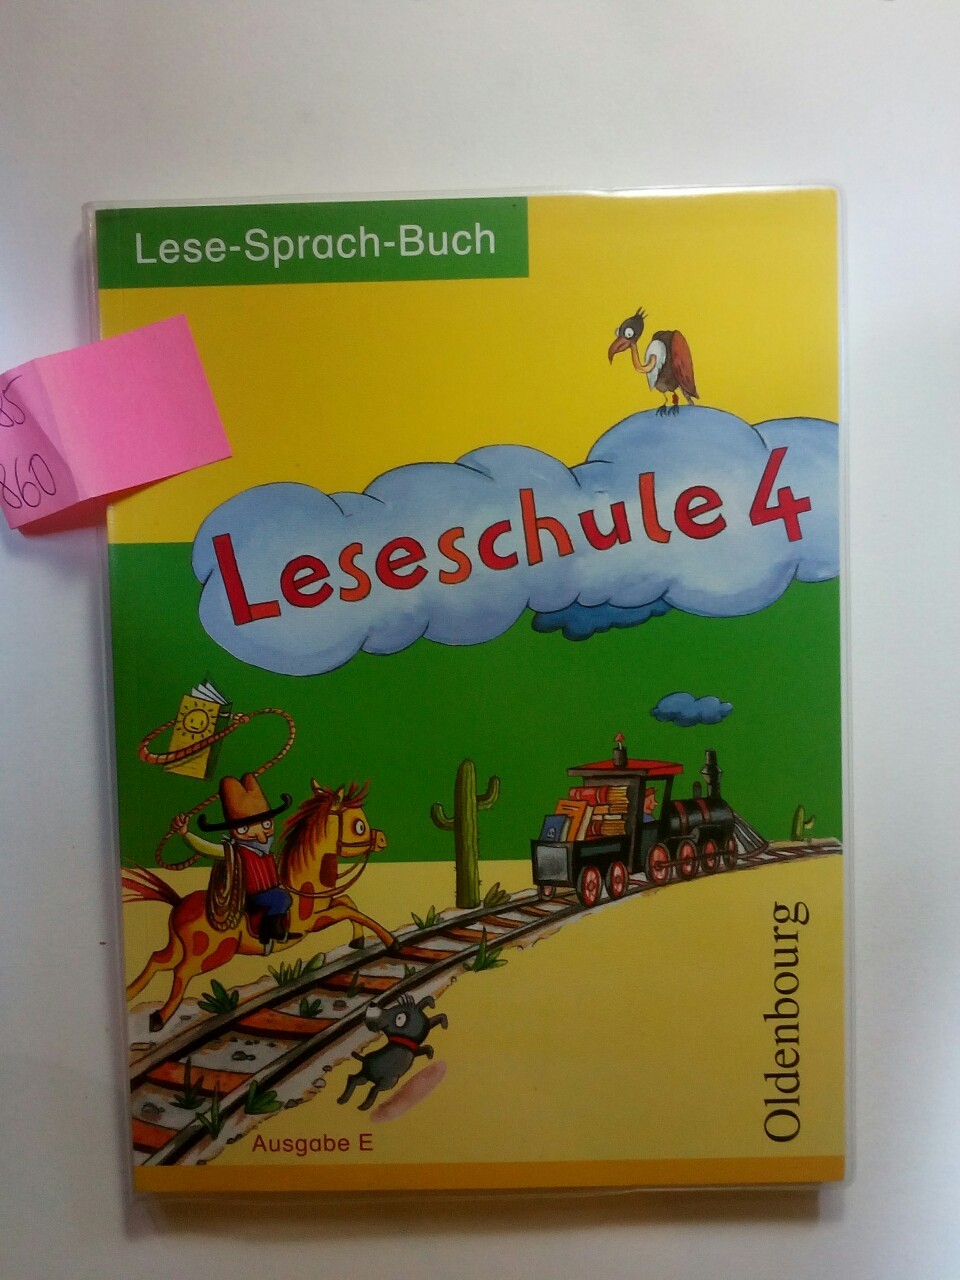 Leseschule E 4. Schuljahr: Ein Lese-Sprach-Buch für die Grundschule - Derwensky, Heike, Helmtrud Keck  und Sabine Köpp